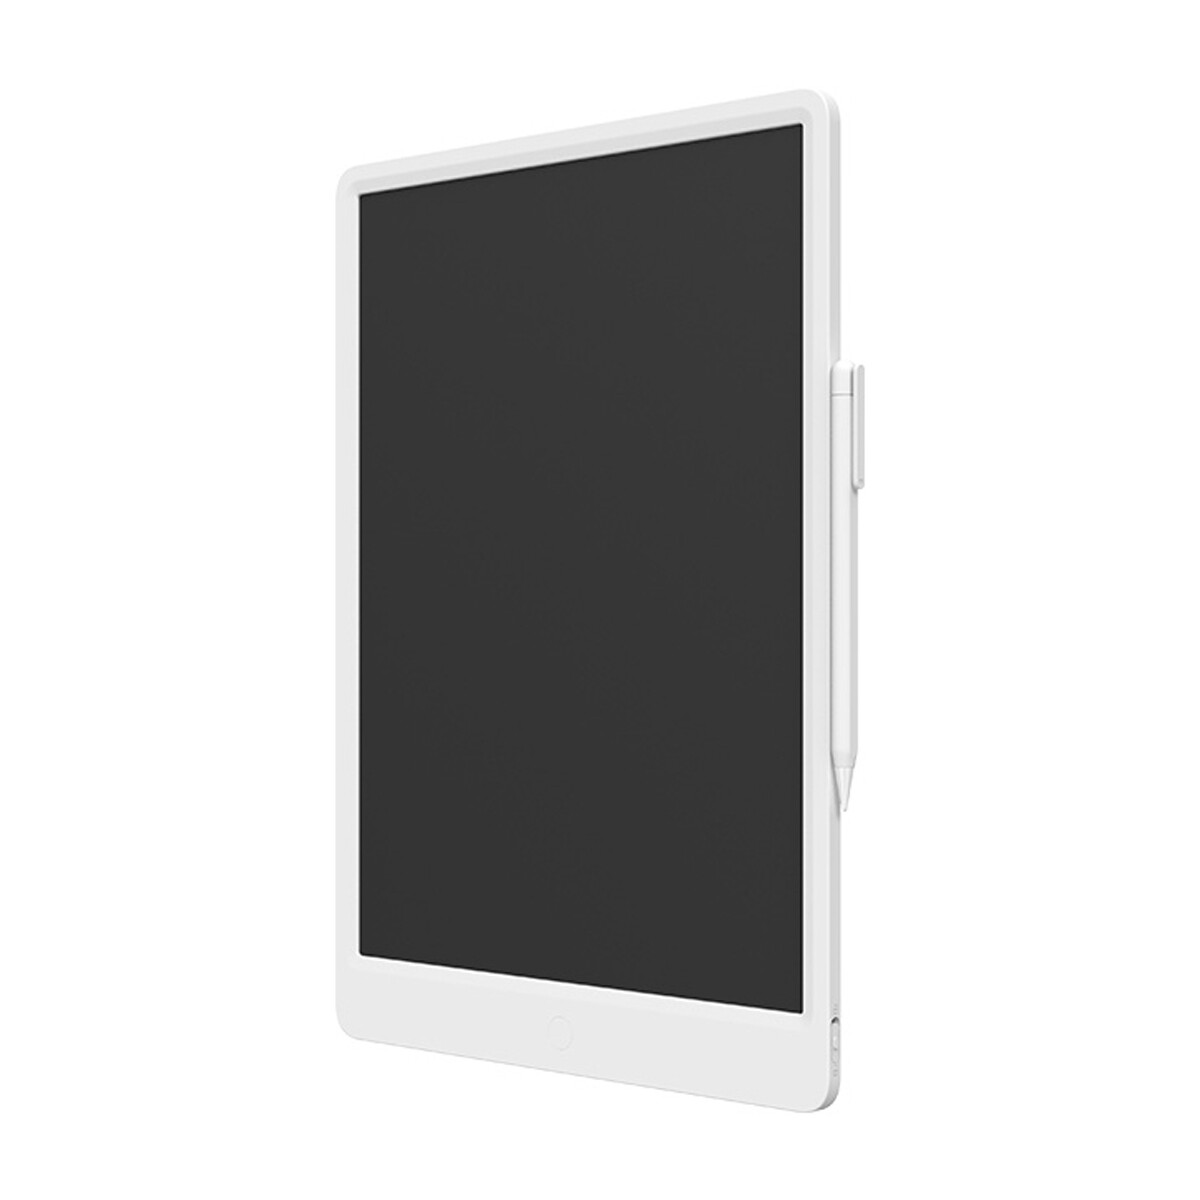 Tablet LCD Redmi. Para dibujar o escribir. Pantalla 13.5" 